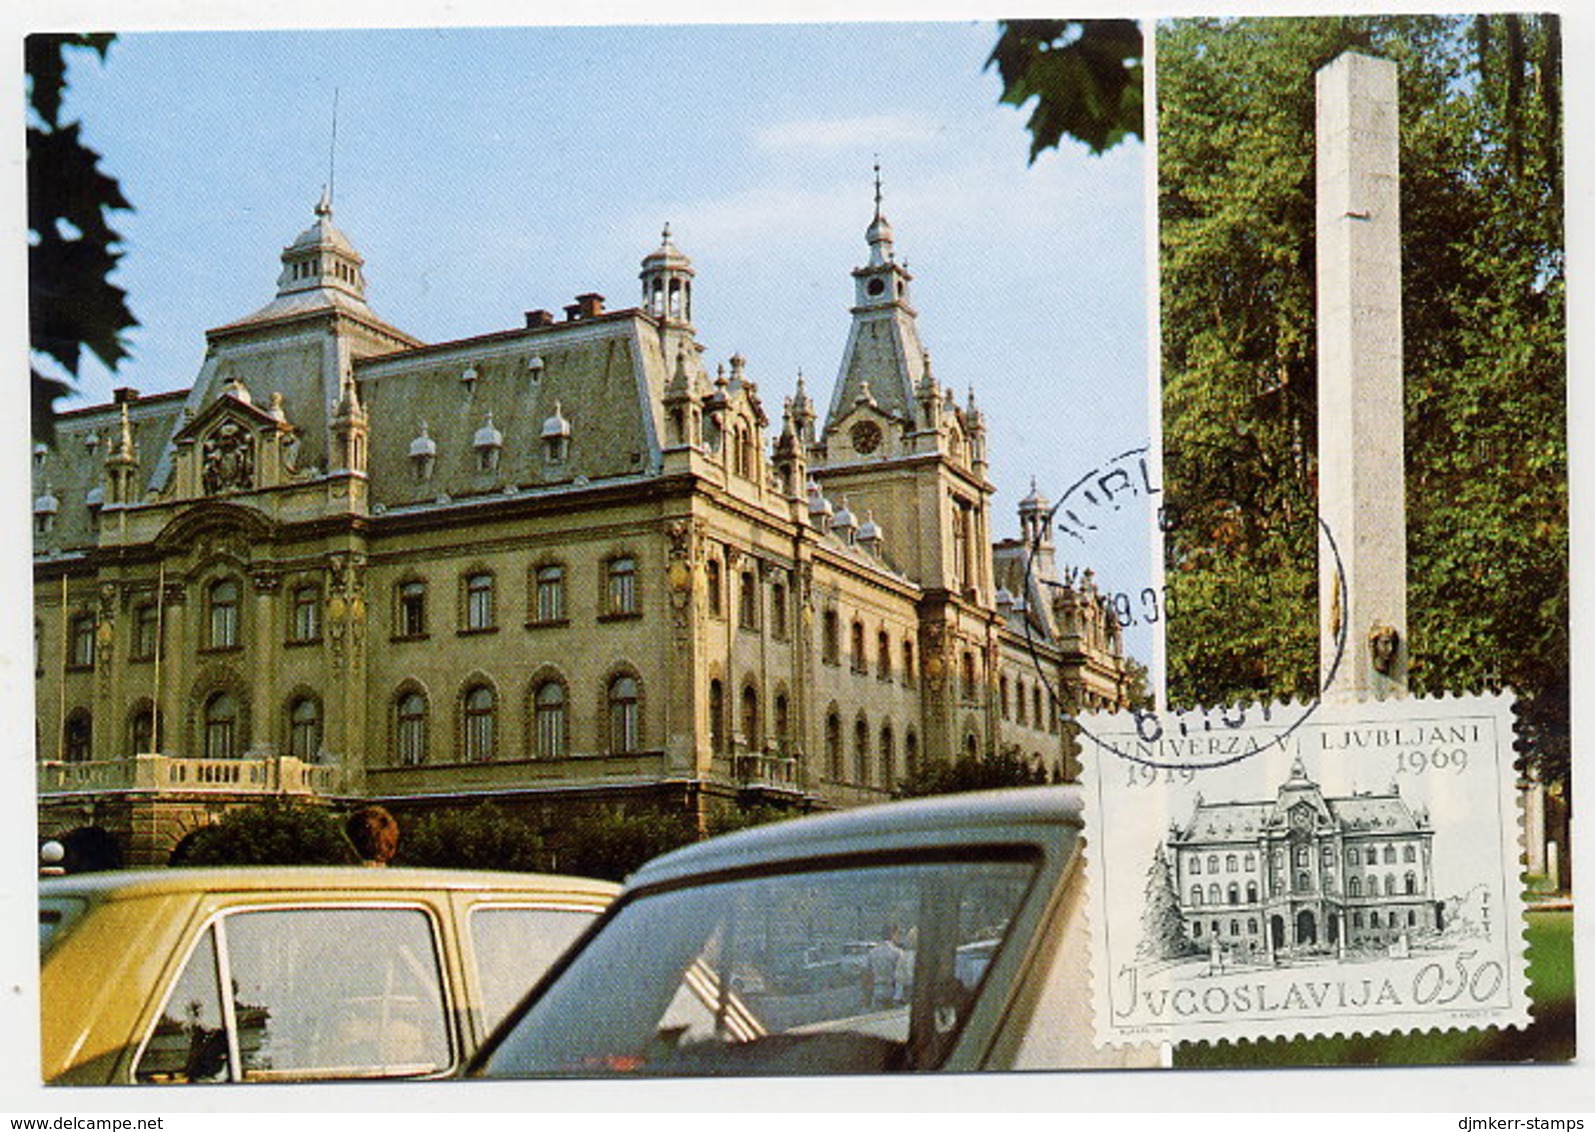 YUGOSLAVIA 1969 Ljubljana University On Maximum Card. Michel 1358 - Tarjetas – Máxima